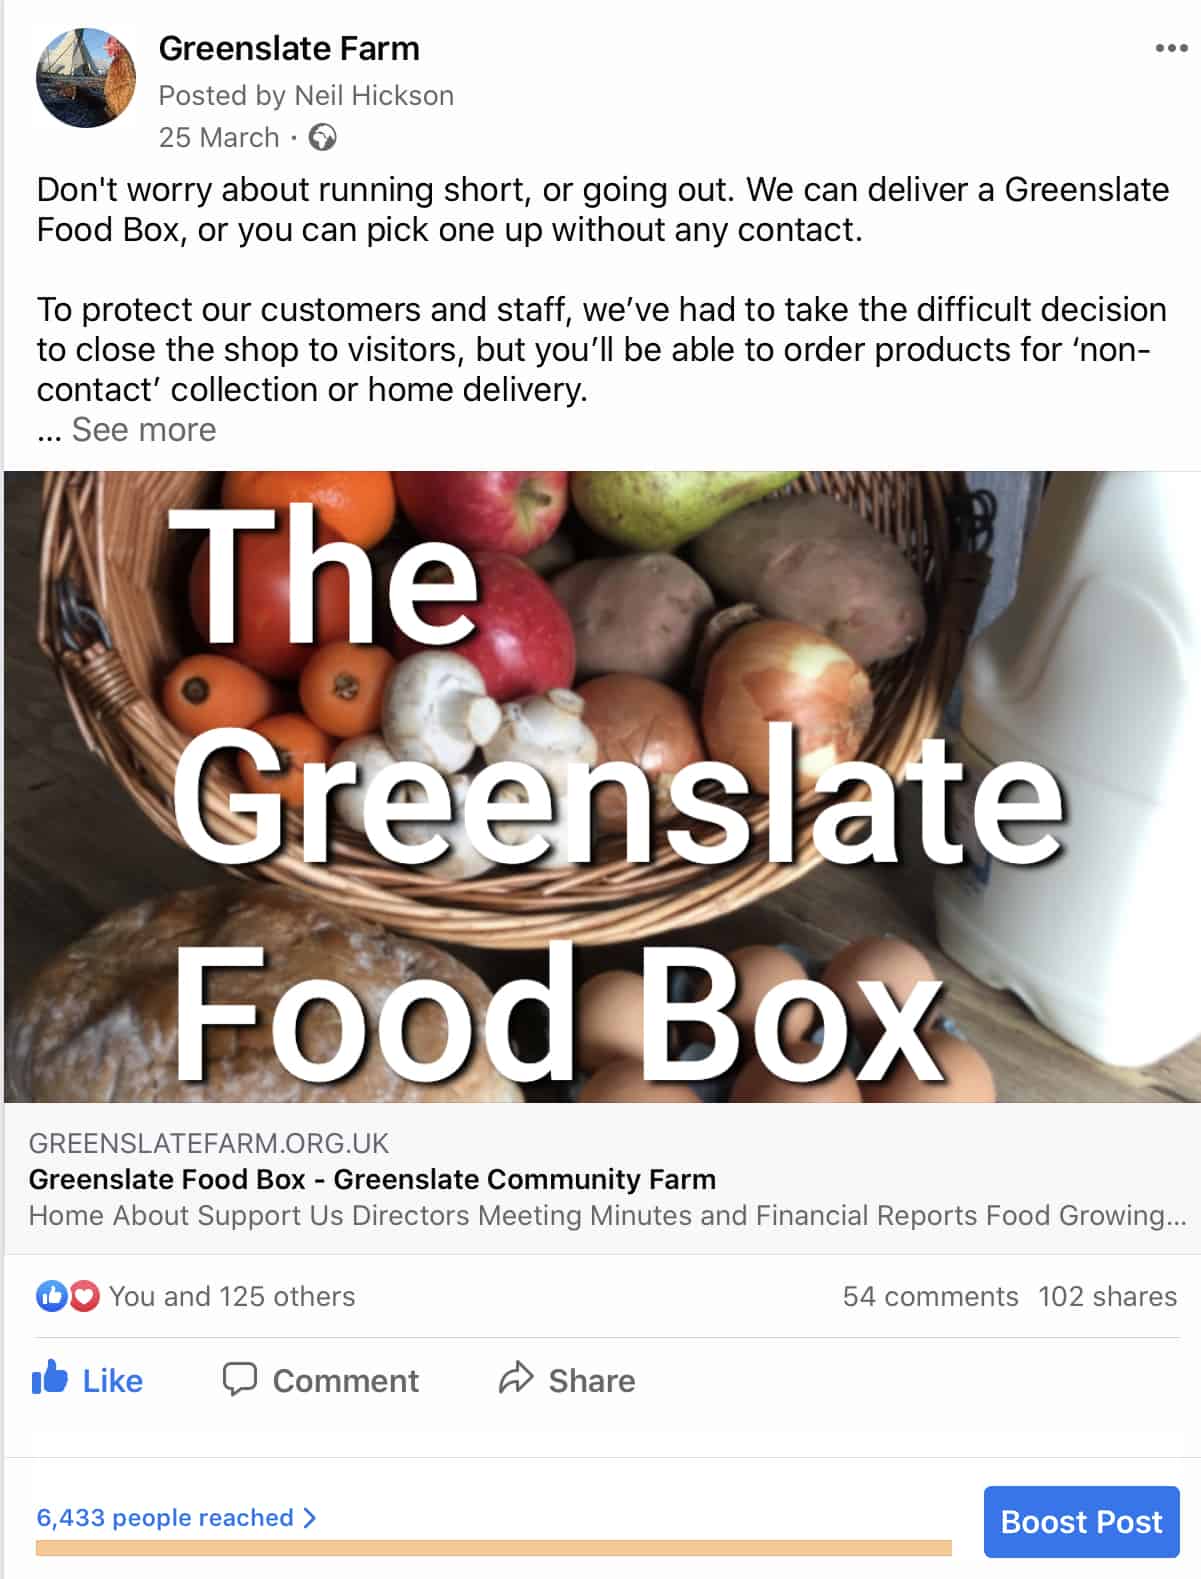 Greenslate Food Box on Facebook image